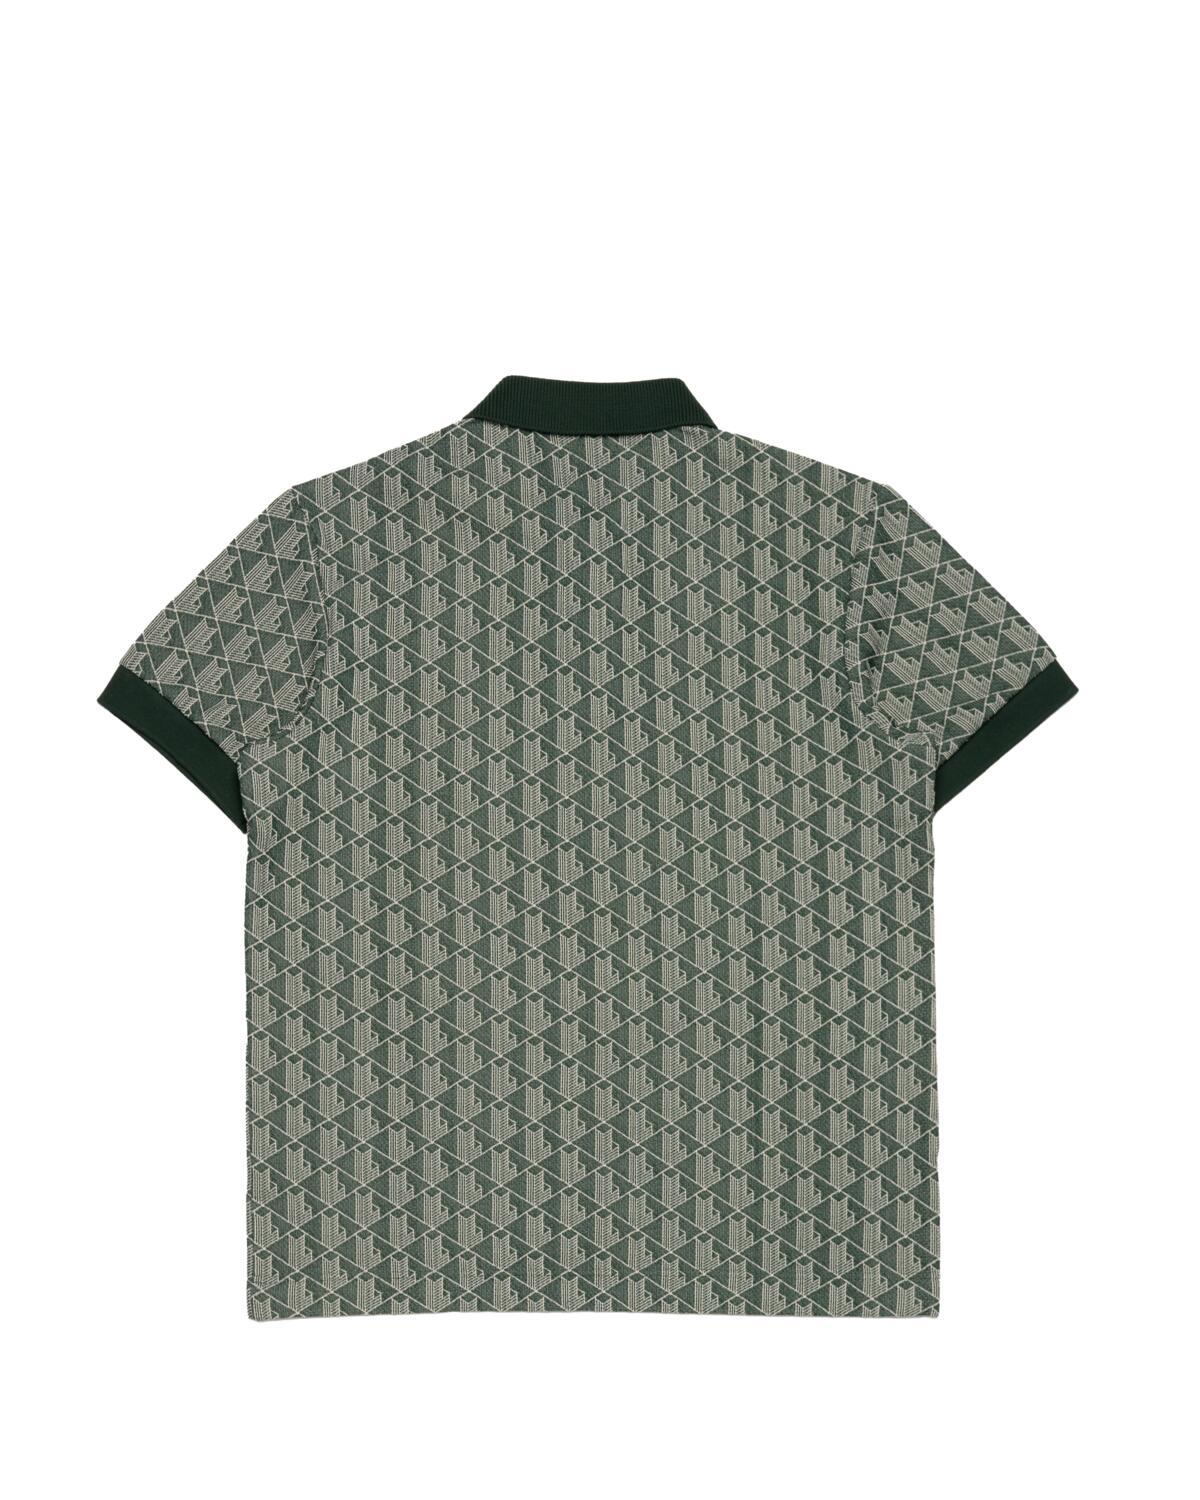 Lacoste Men’s Short Sleeve Monogram Shirt